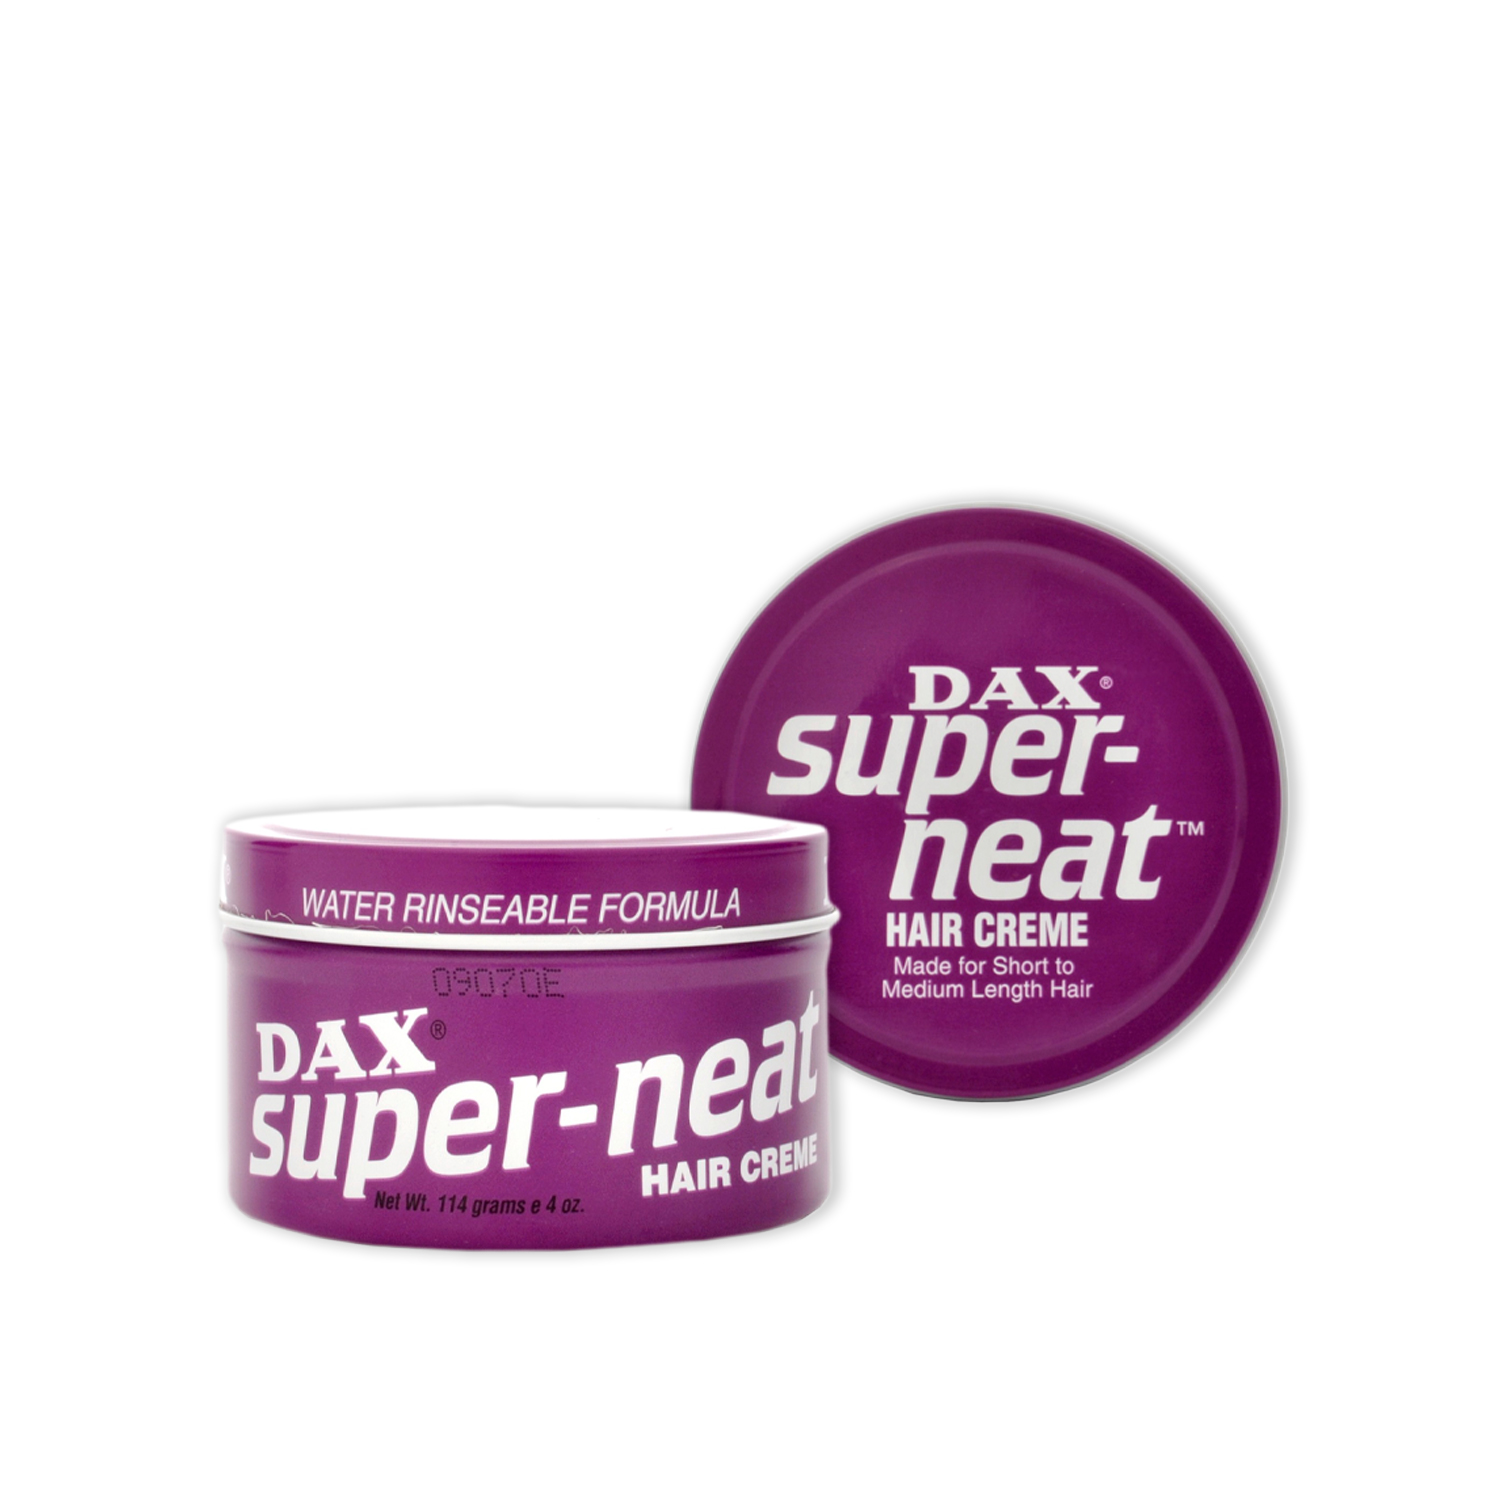 DAX Hair Creme Super Neat 114g